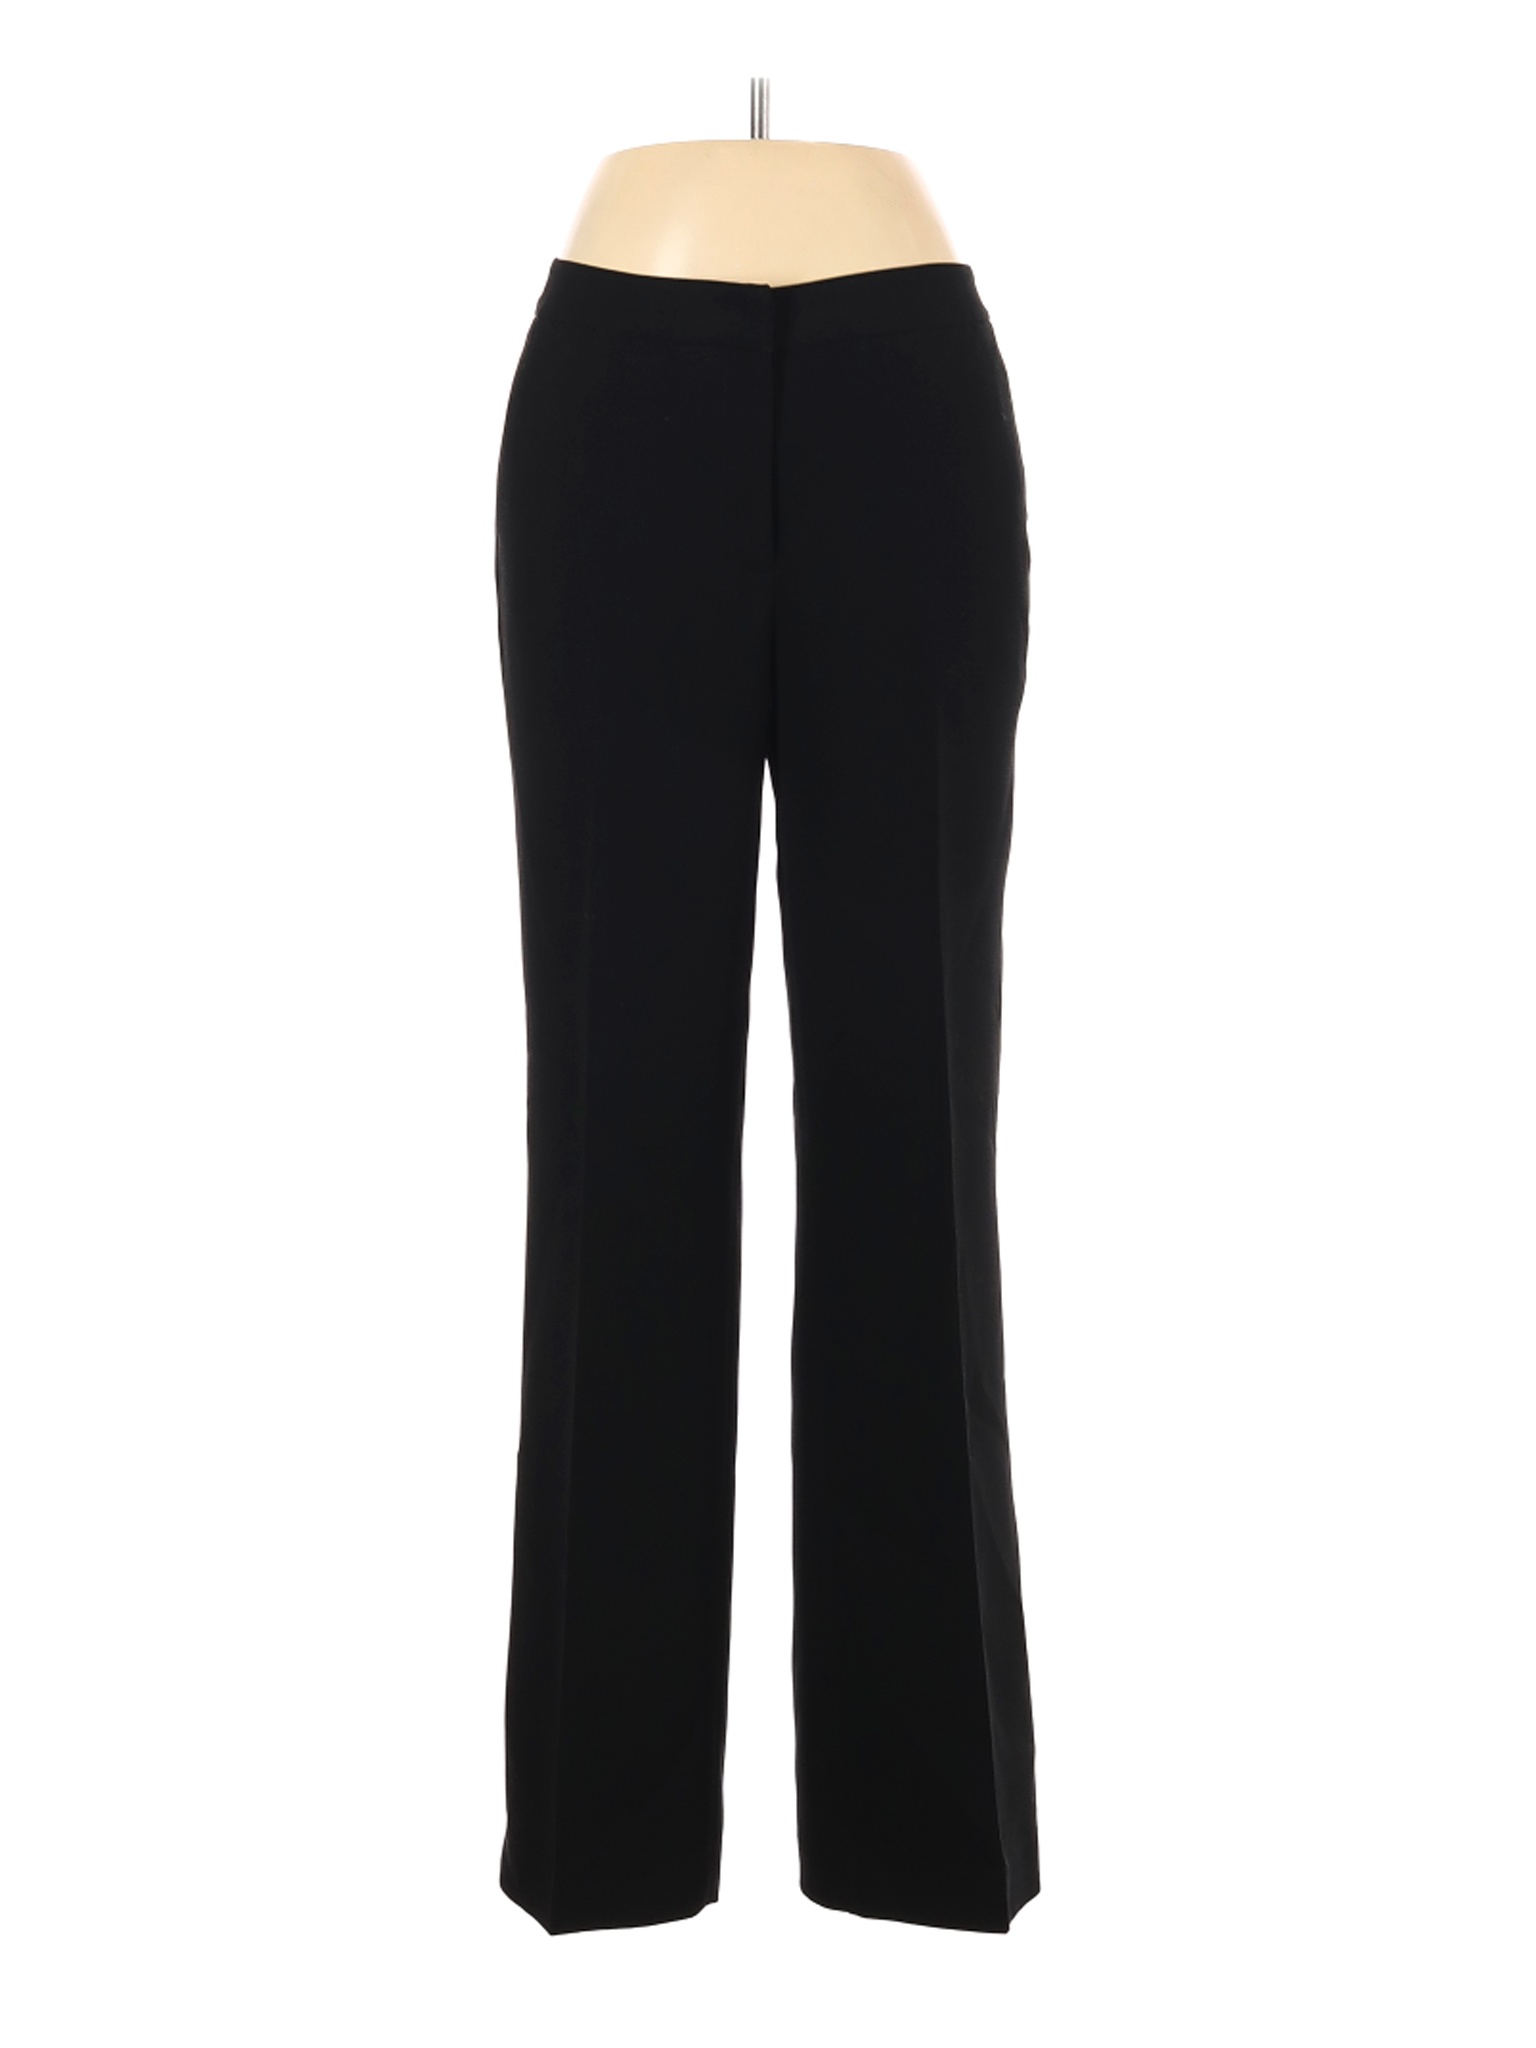 Calvin Klein Women Black Dress Pants 6 | eBay